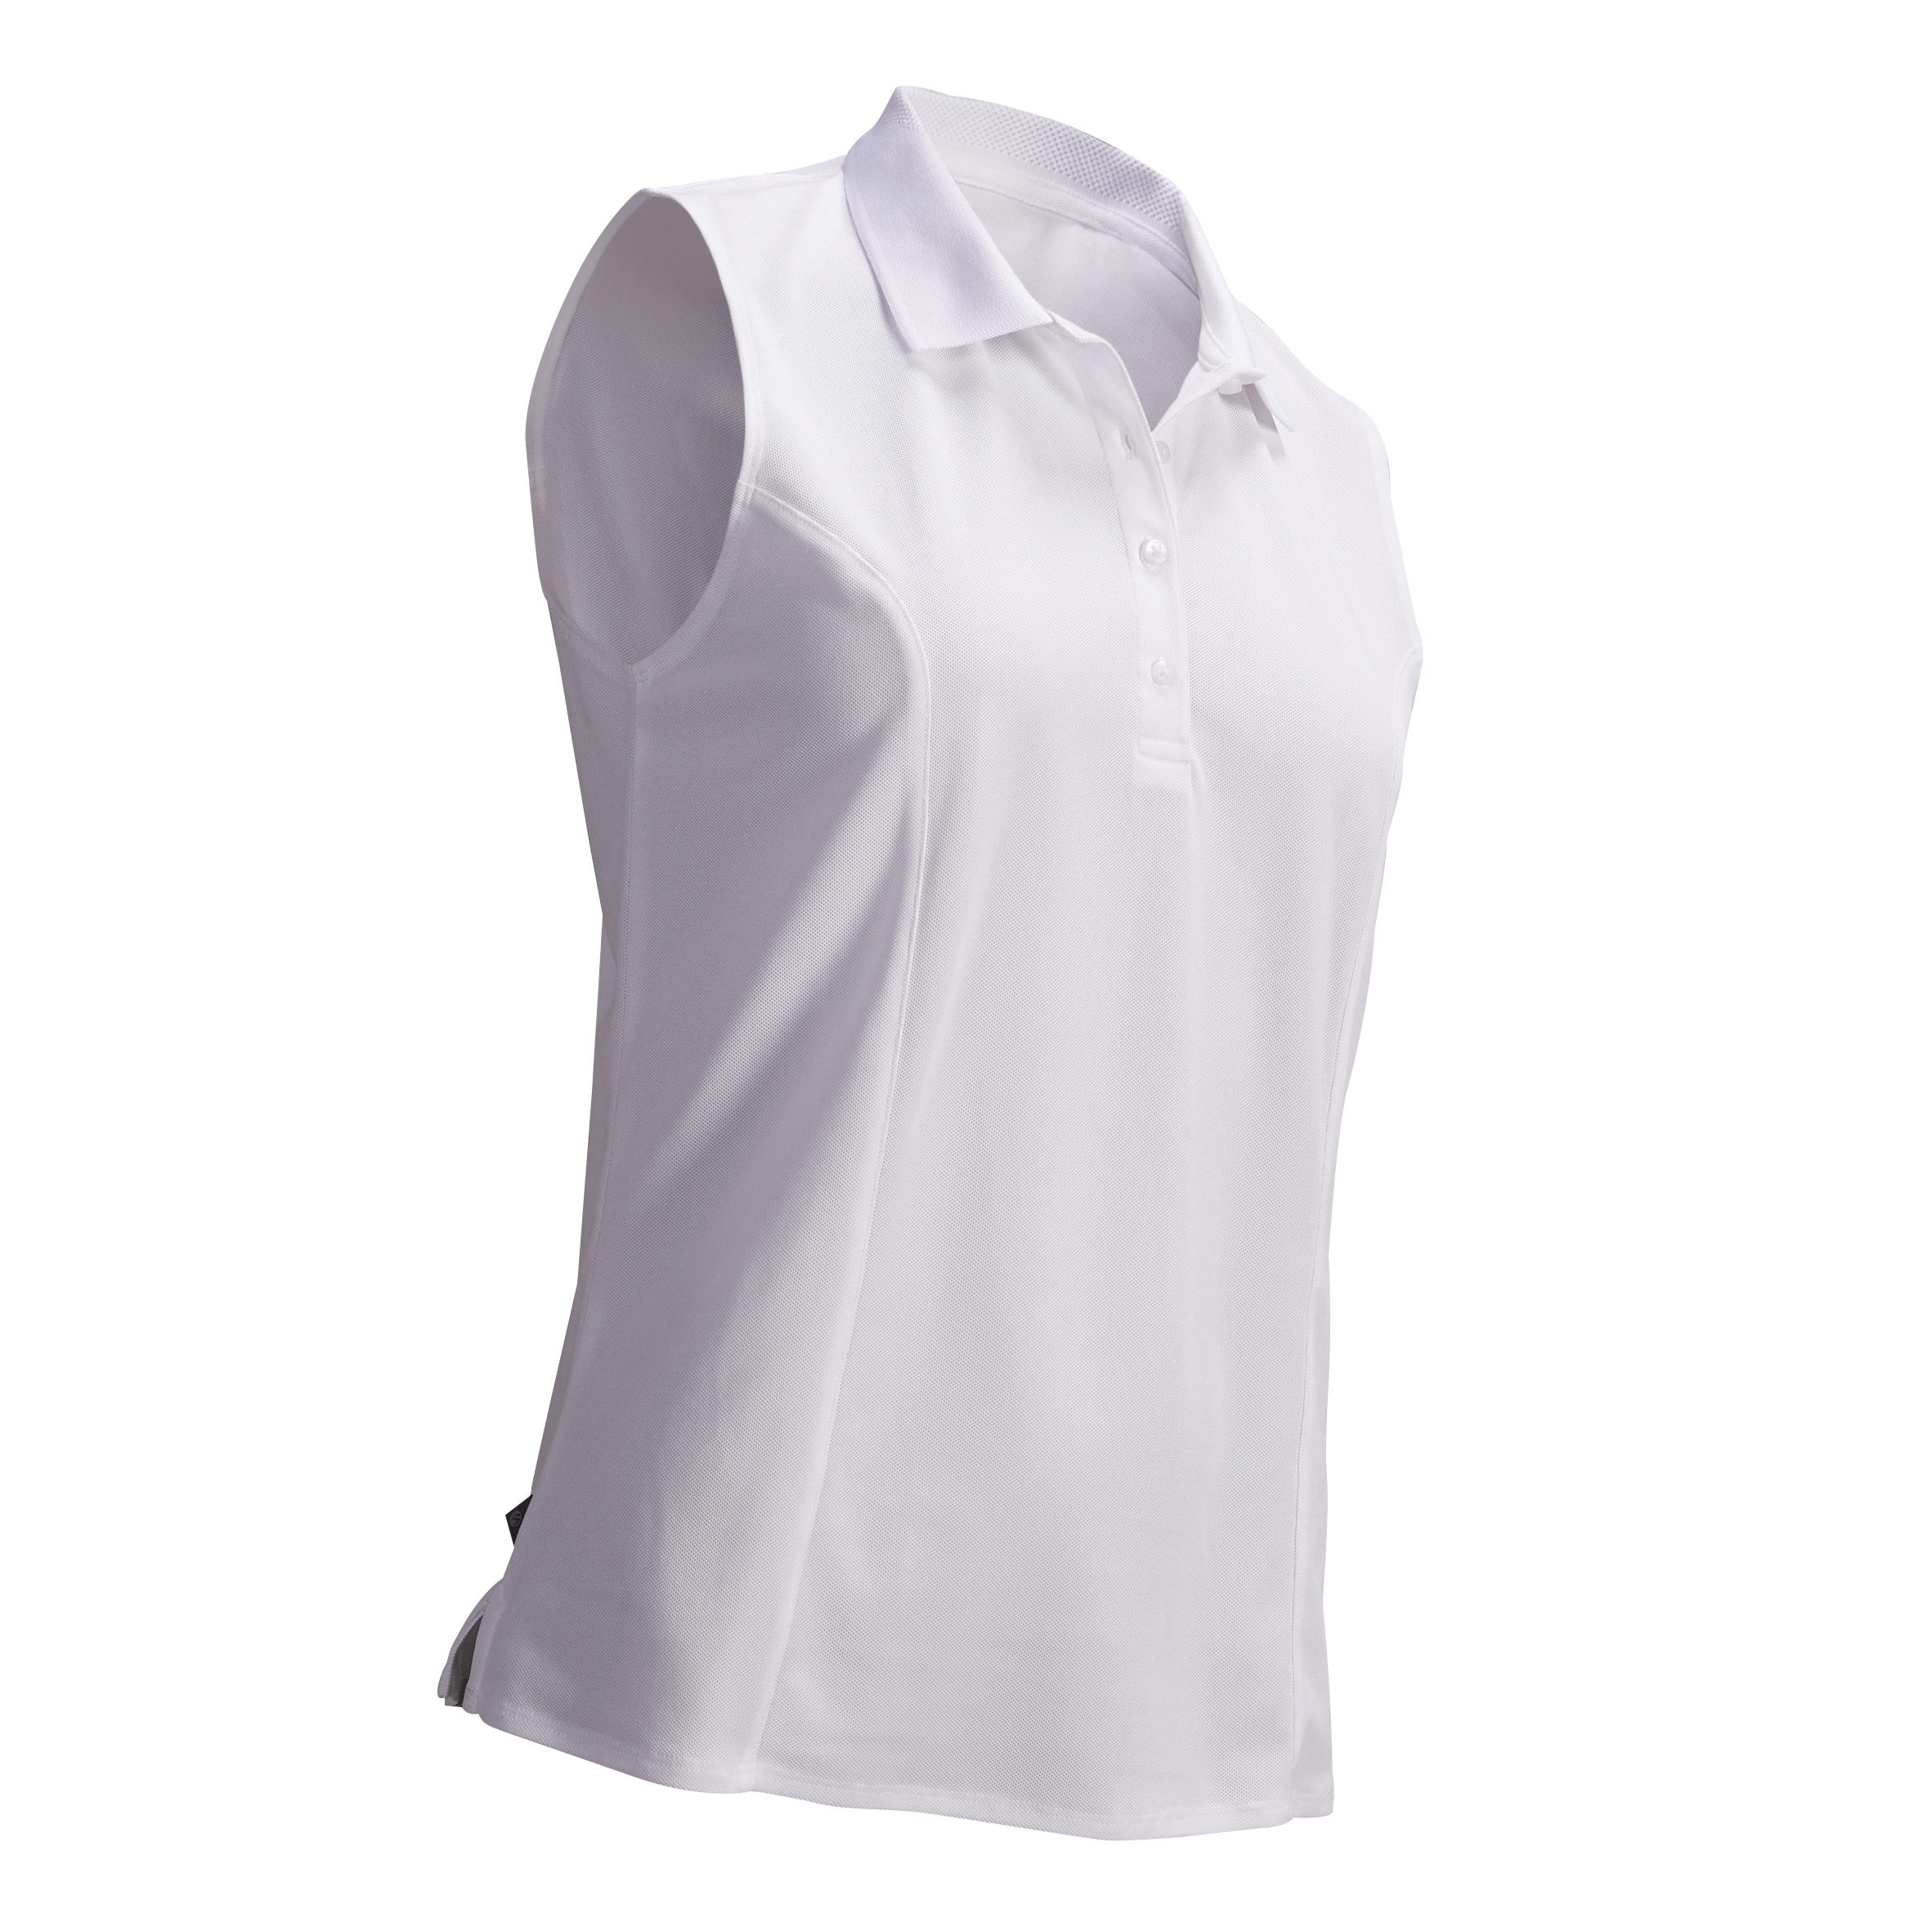 womens white sleeveless golf shirt